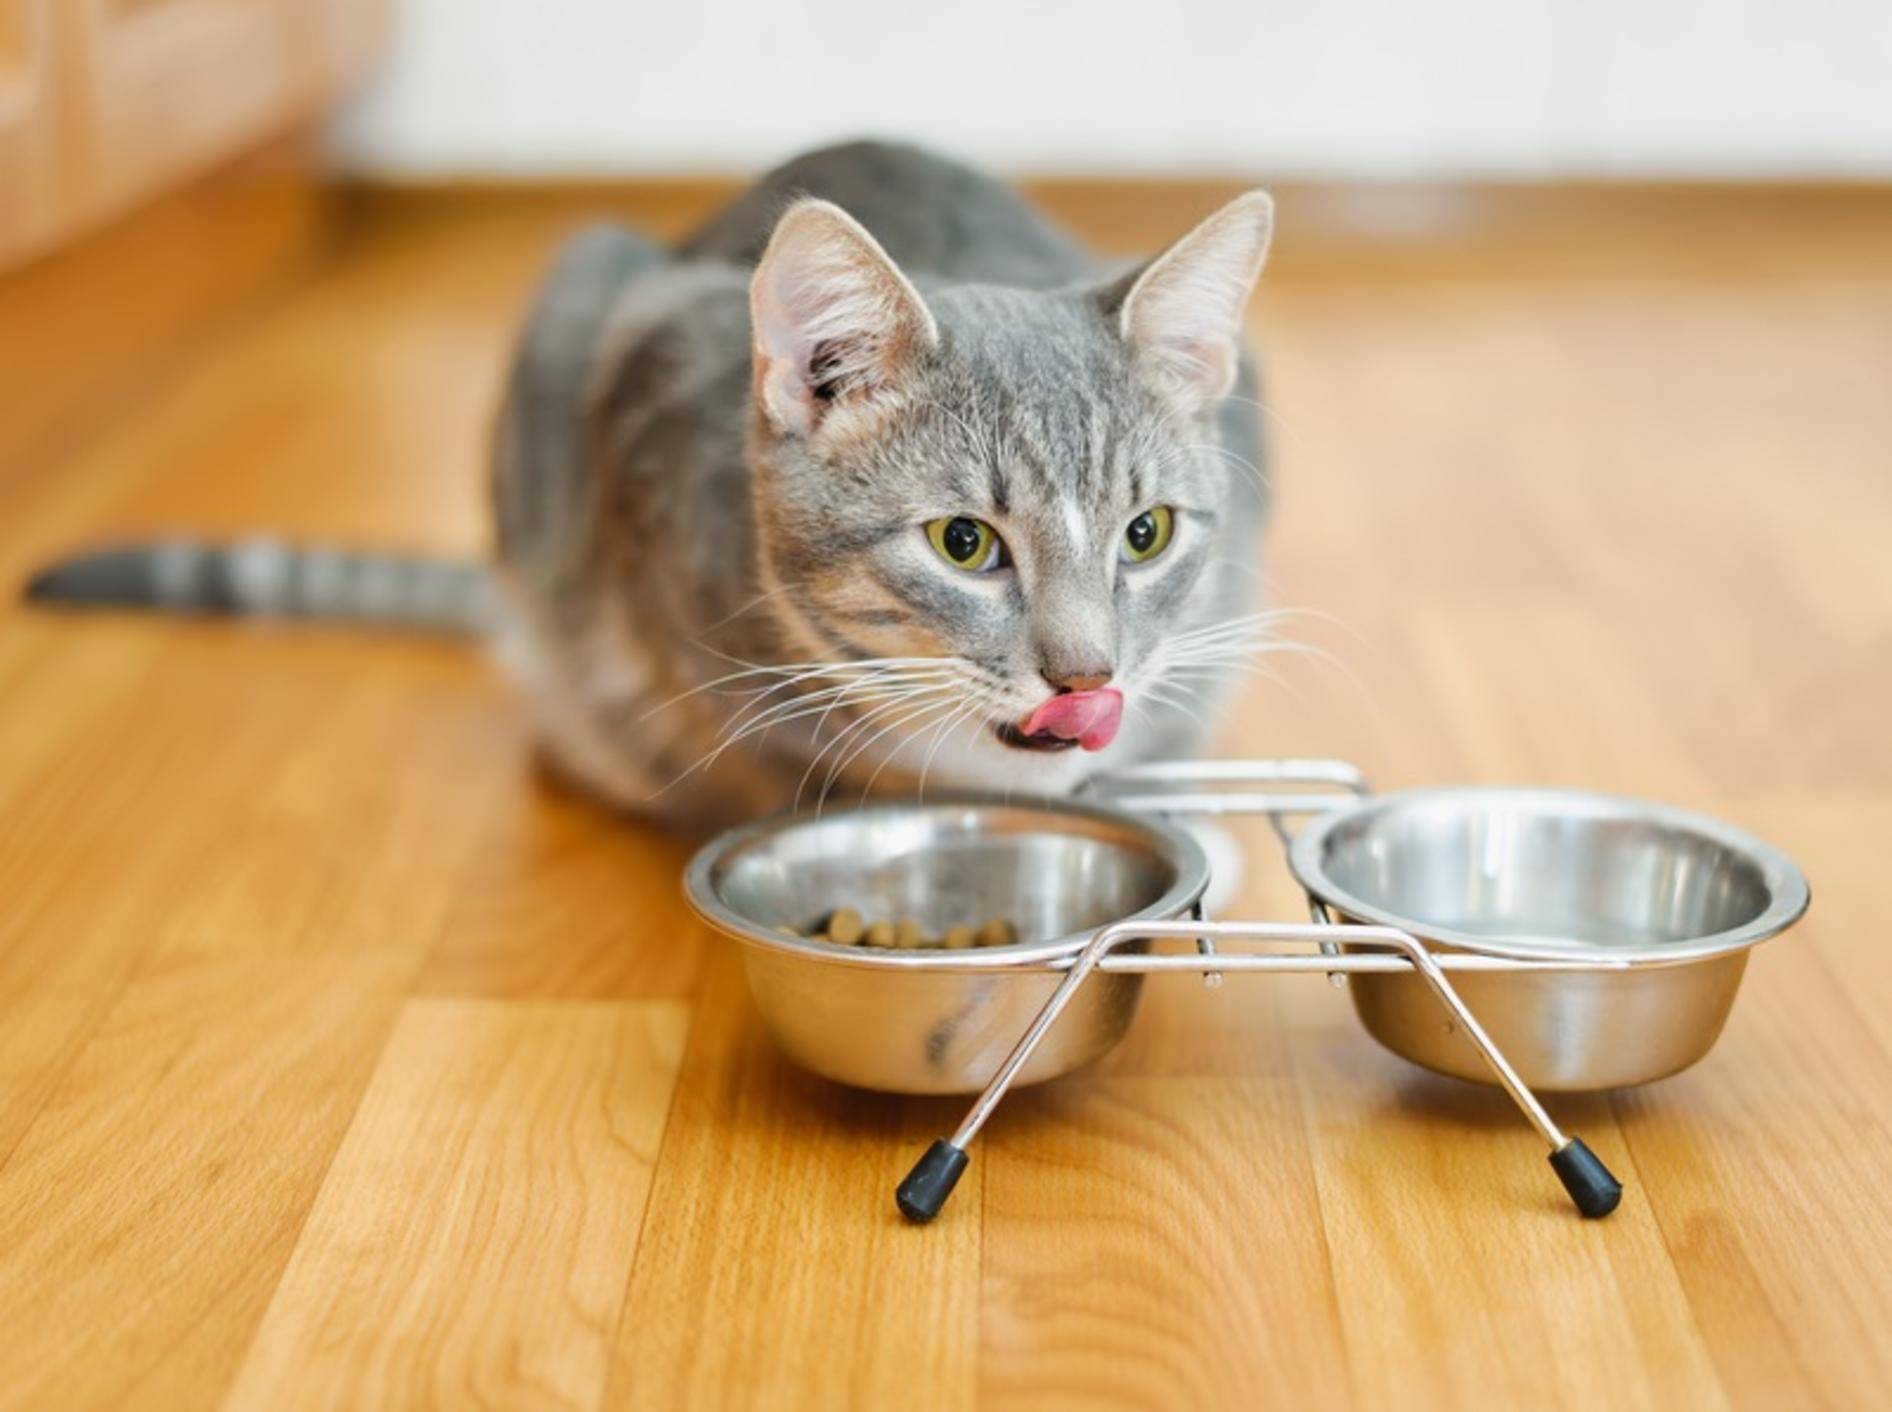 Целый голодный. Миска для кота. Голодный кот. Кошка возле миски. Кошка возле миски с едой.